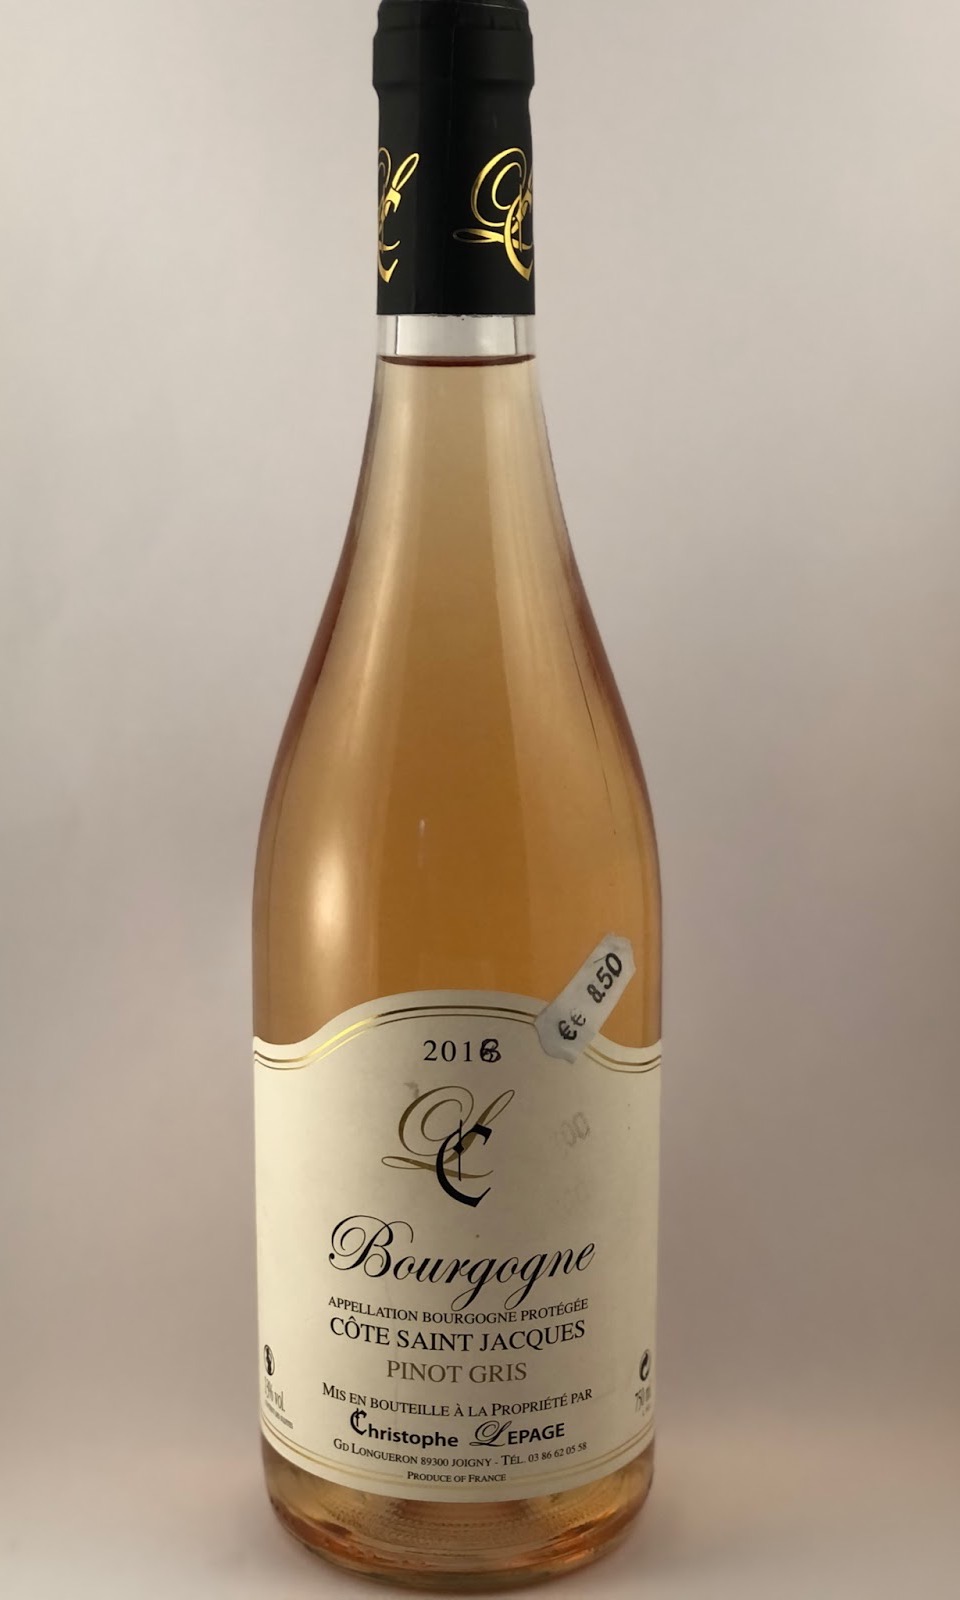 Vin gris Christophe Lepage Bourgogne Côte Saint Jacques Pinot Gris ABC – 13% - 750 ml